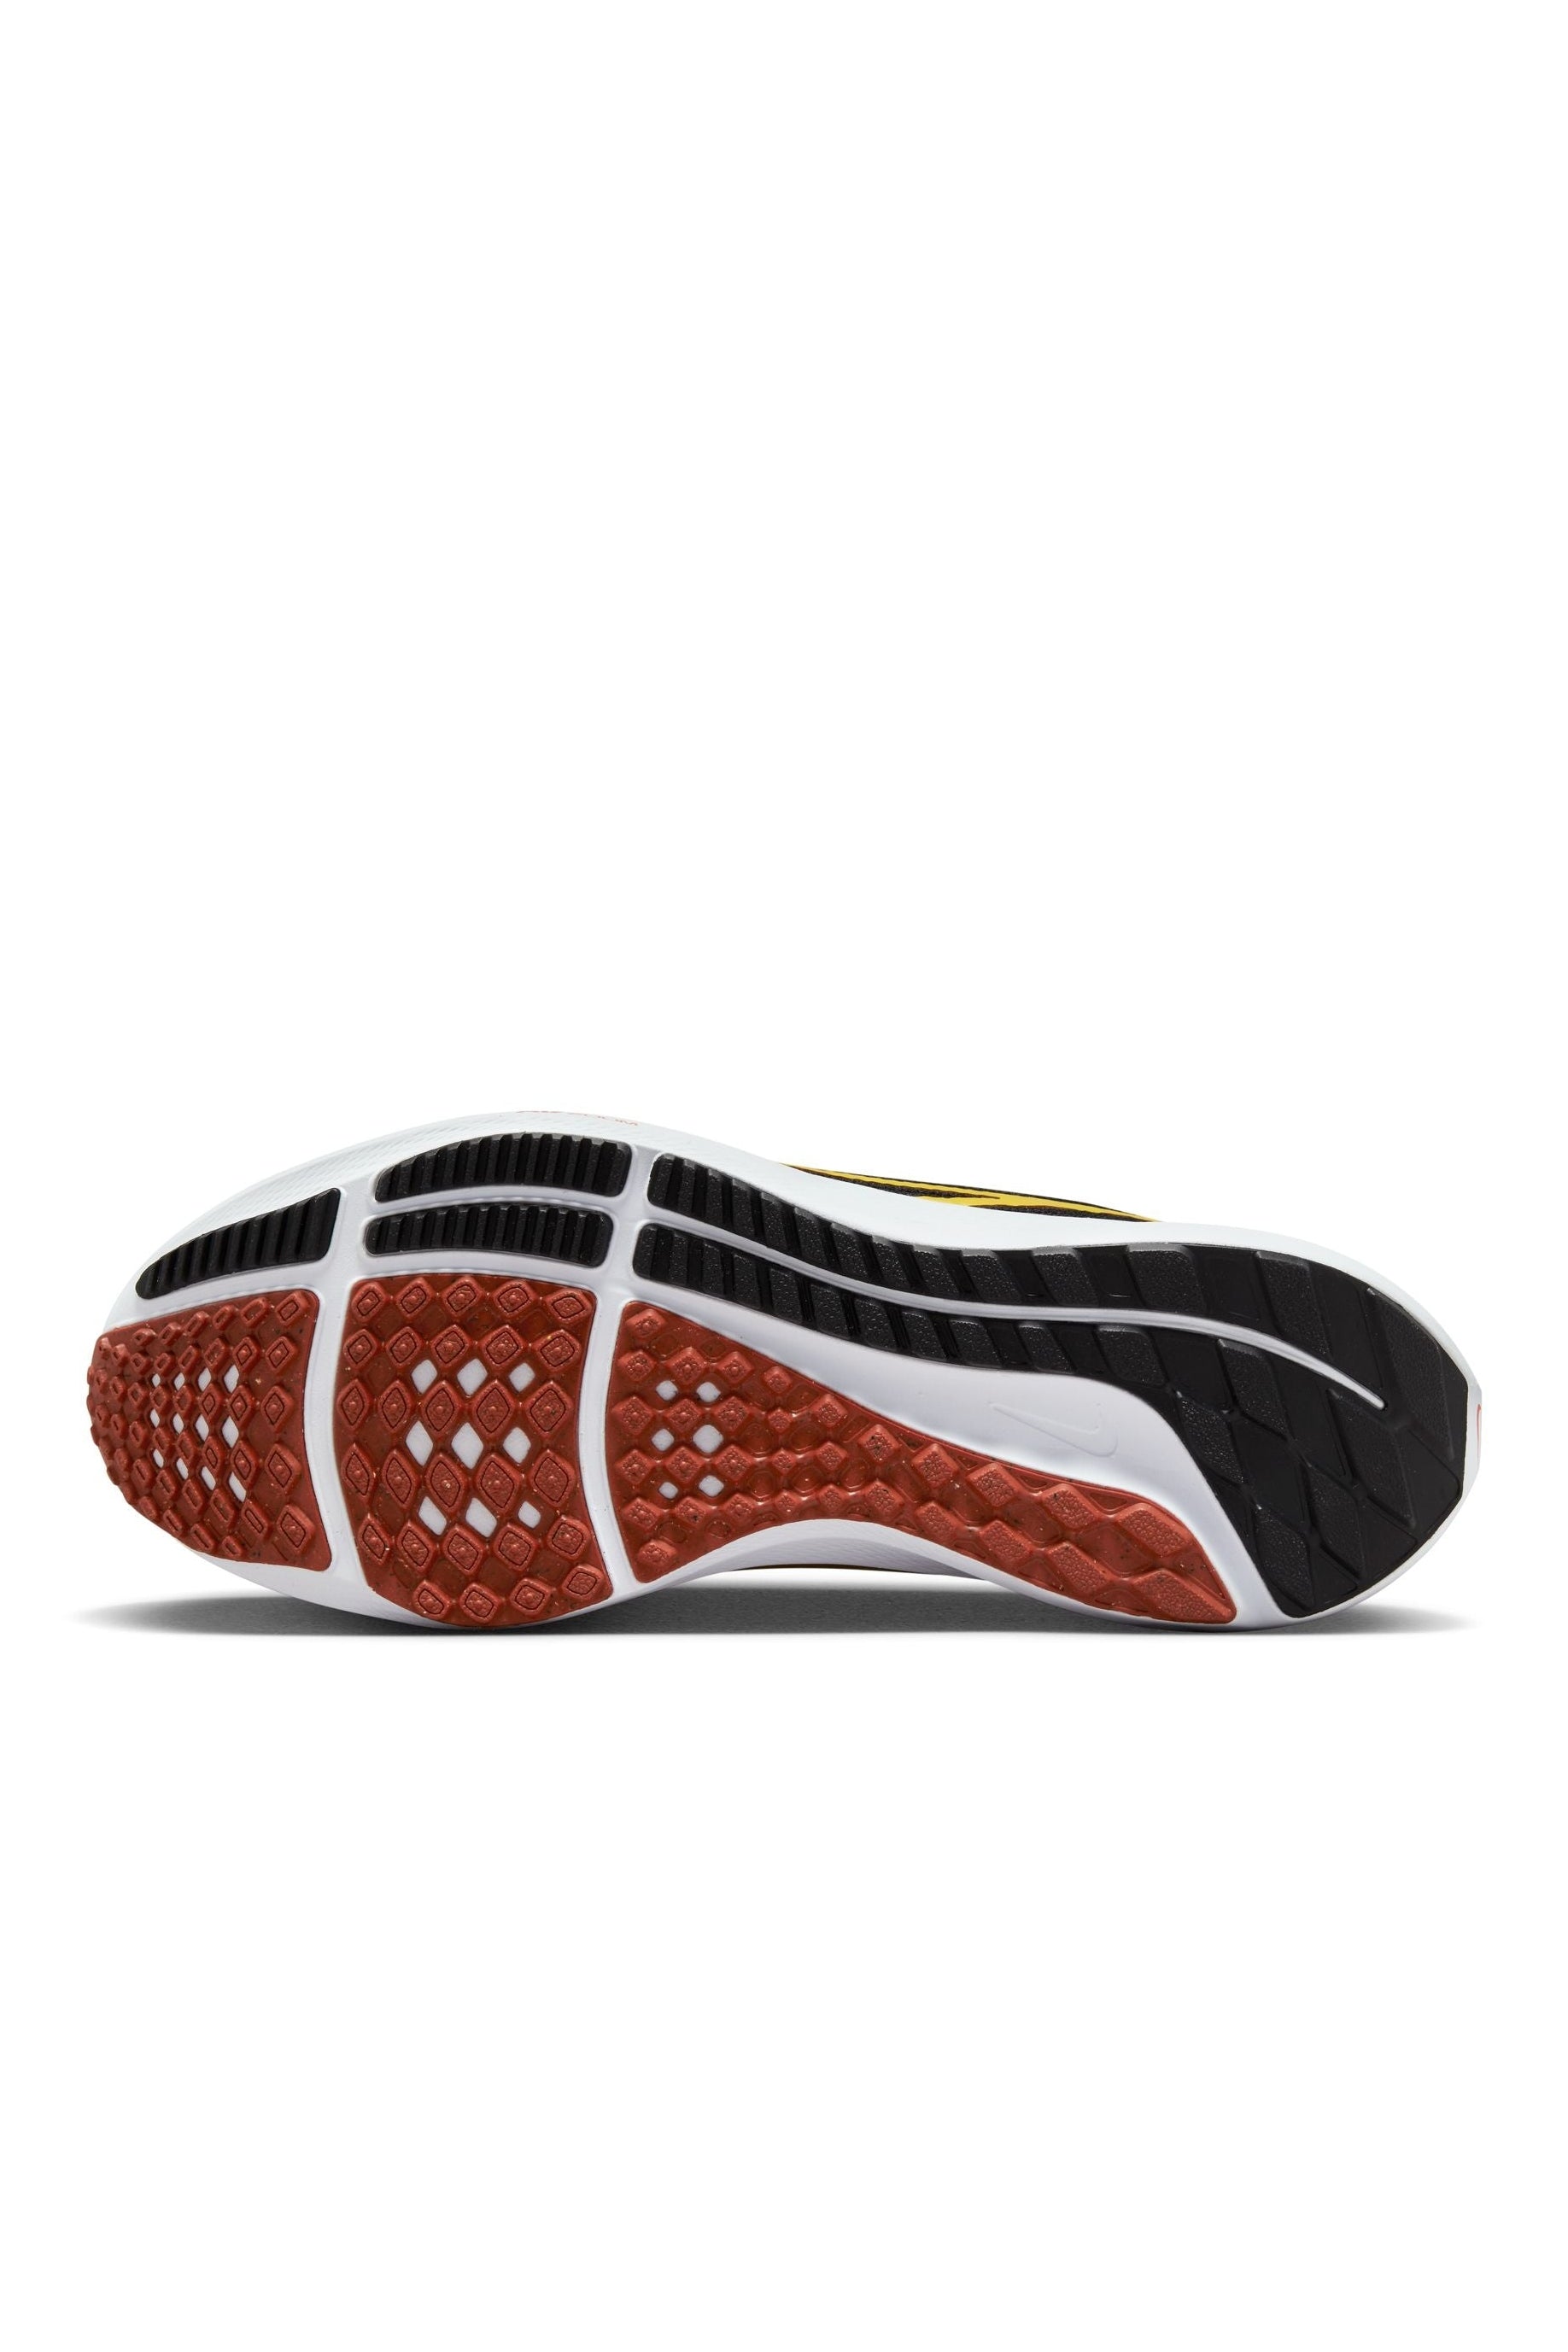 נעלי ספורט לנשים Pegasus 40 בצבע אפור ושחור